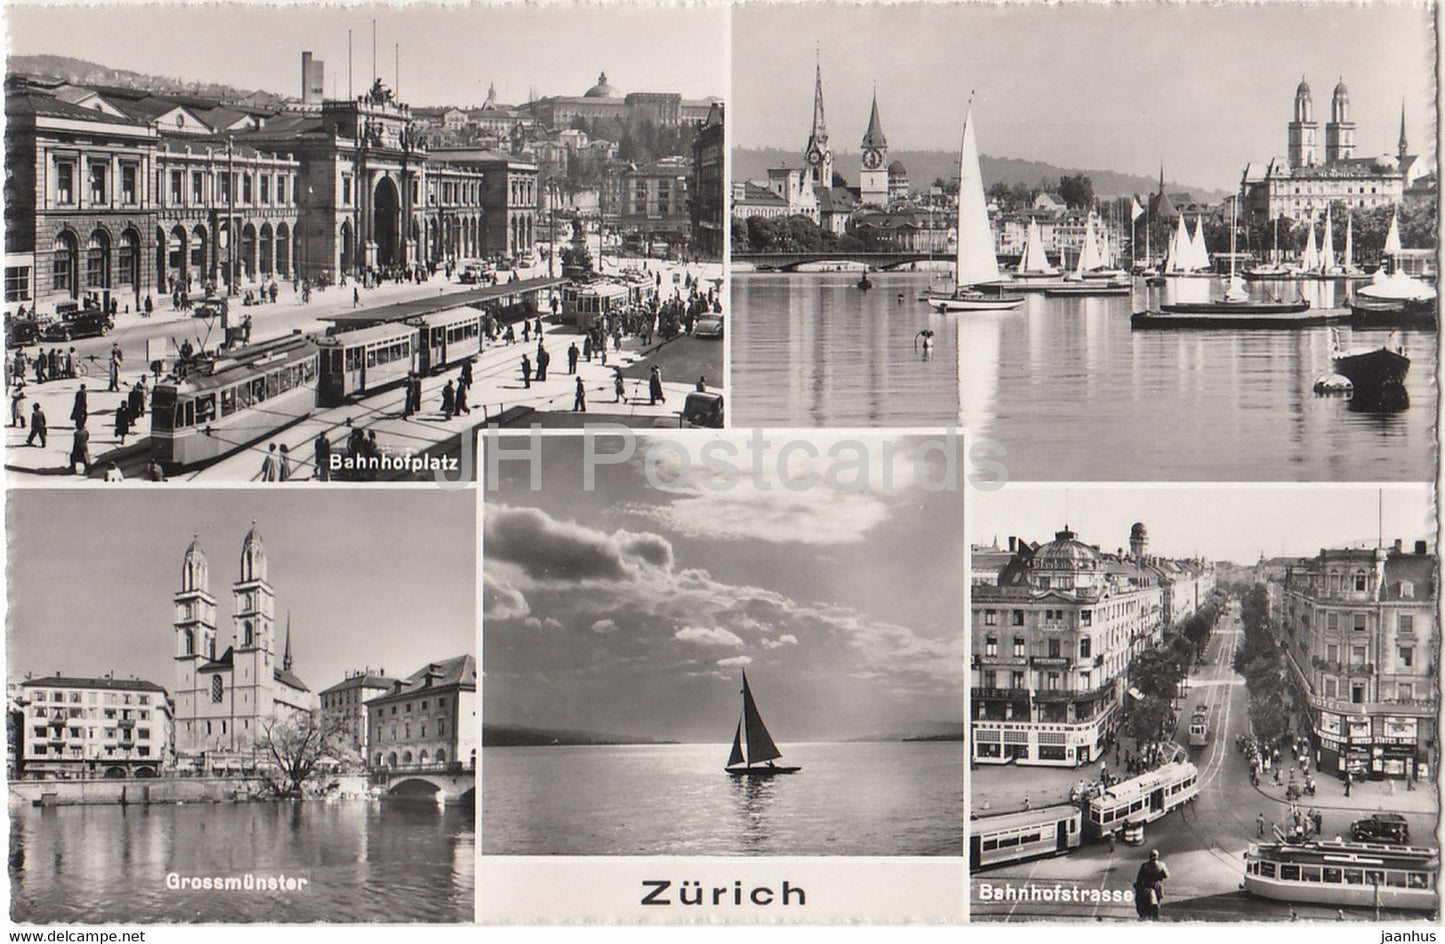 Zurich - Bahnhofplatz - Grossmunster - Bahnhofstrasse - tram - boat - 9222 - Switzerland - unused - JH Postcards